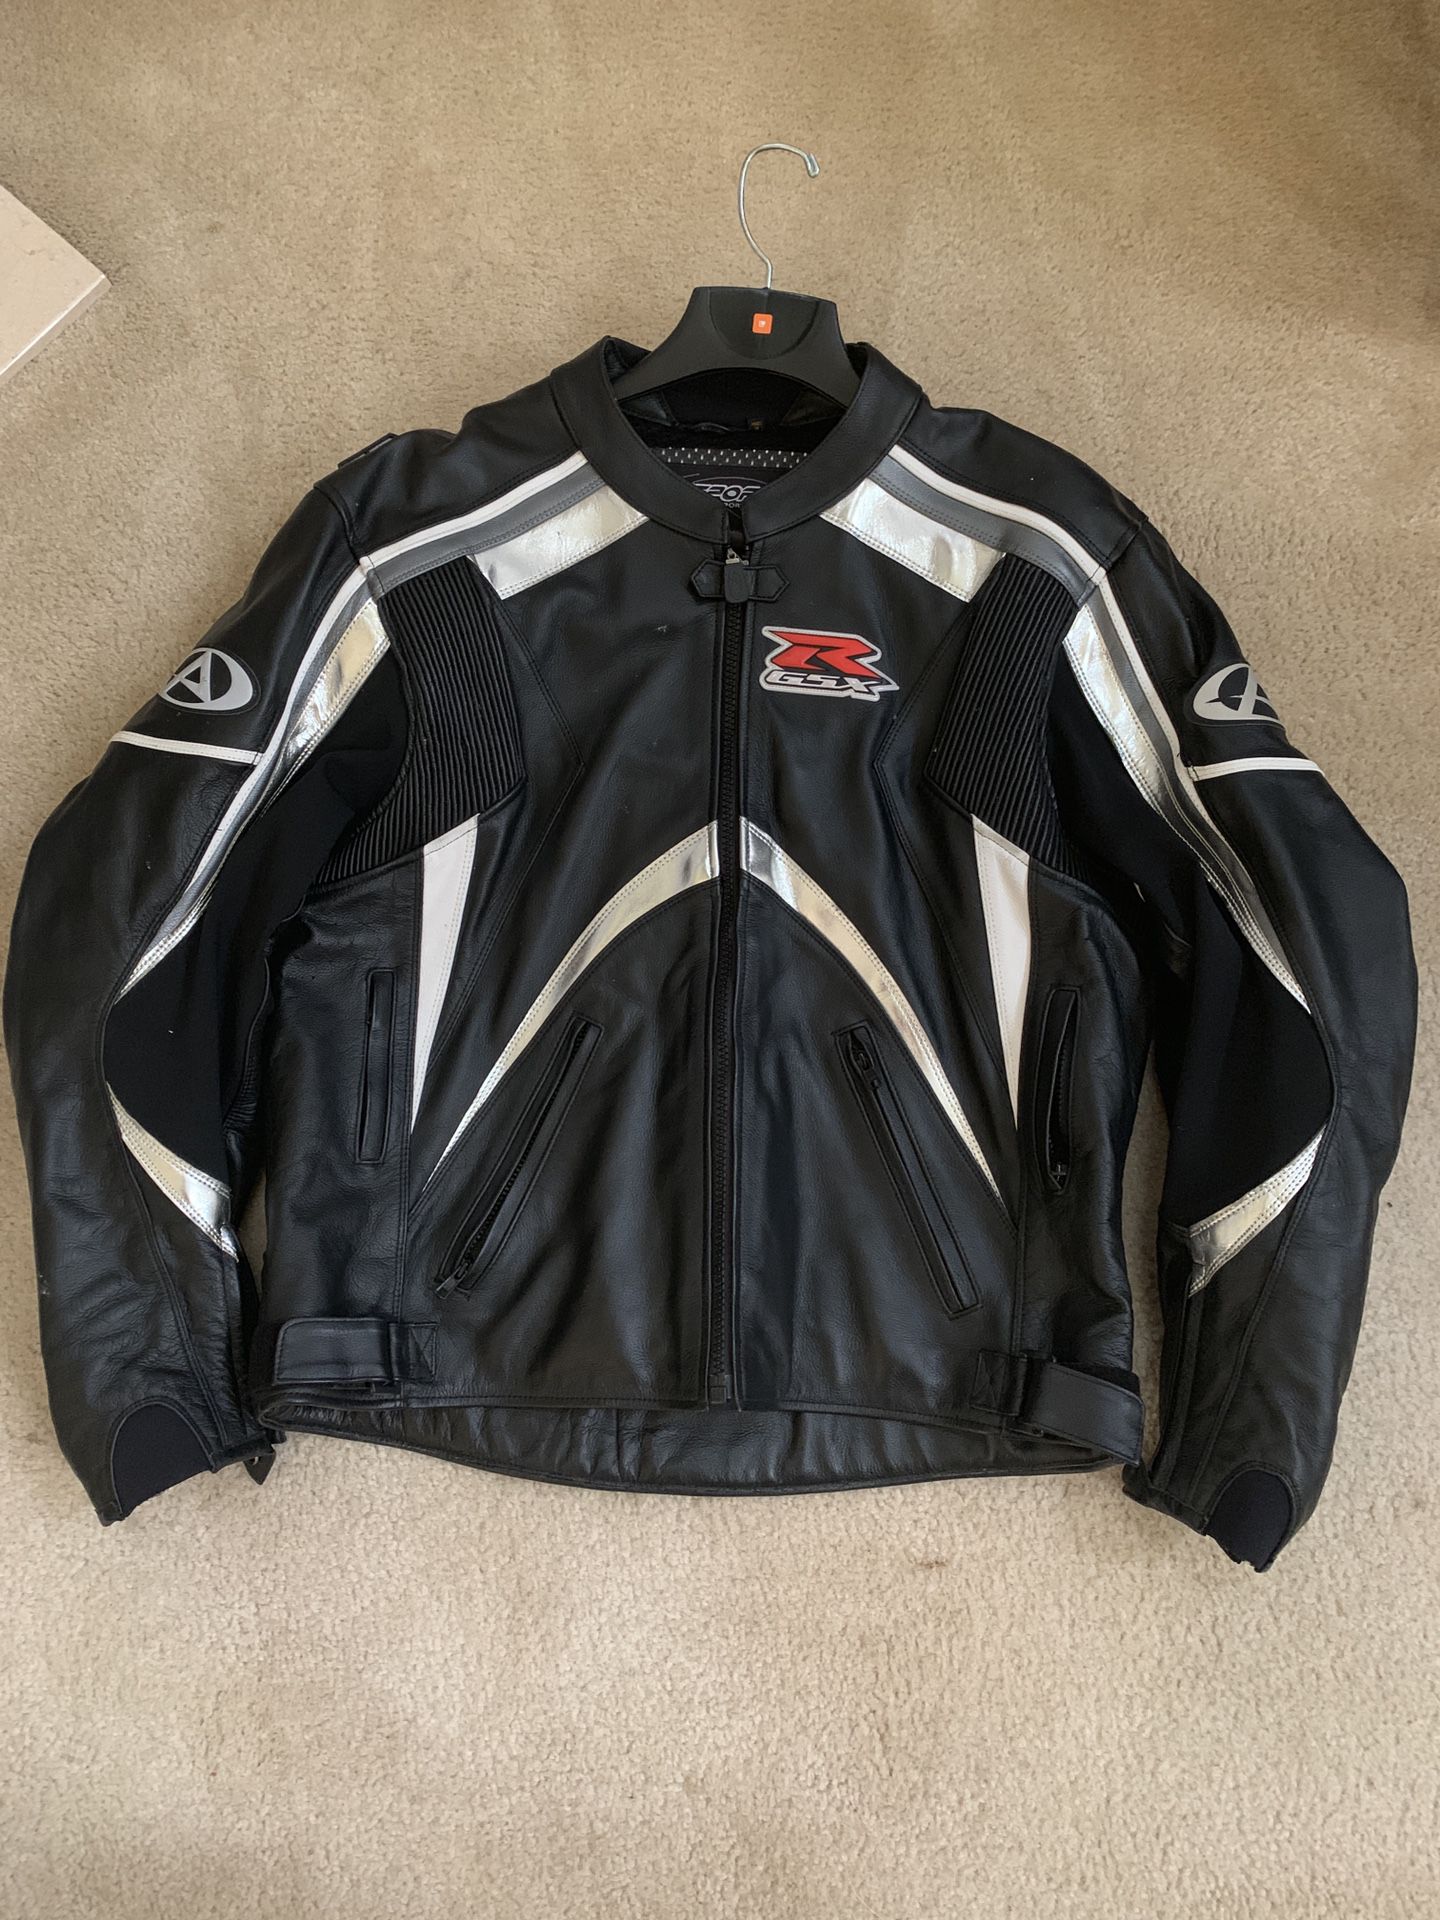 Suzuki GSX-R motorcycle jacket